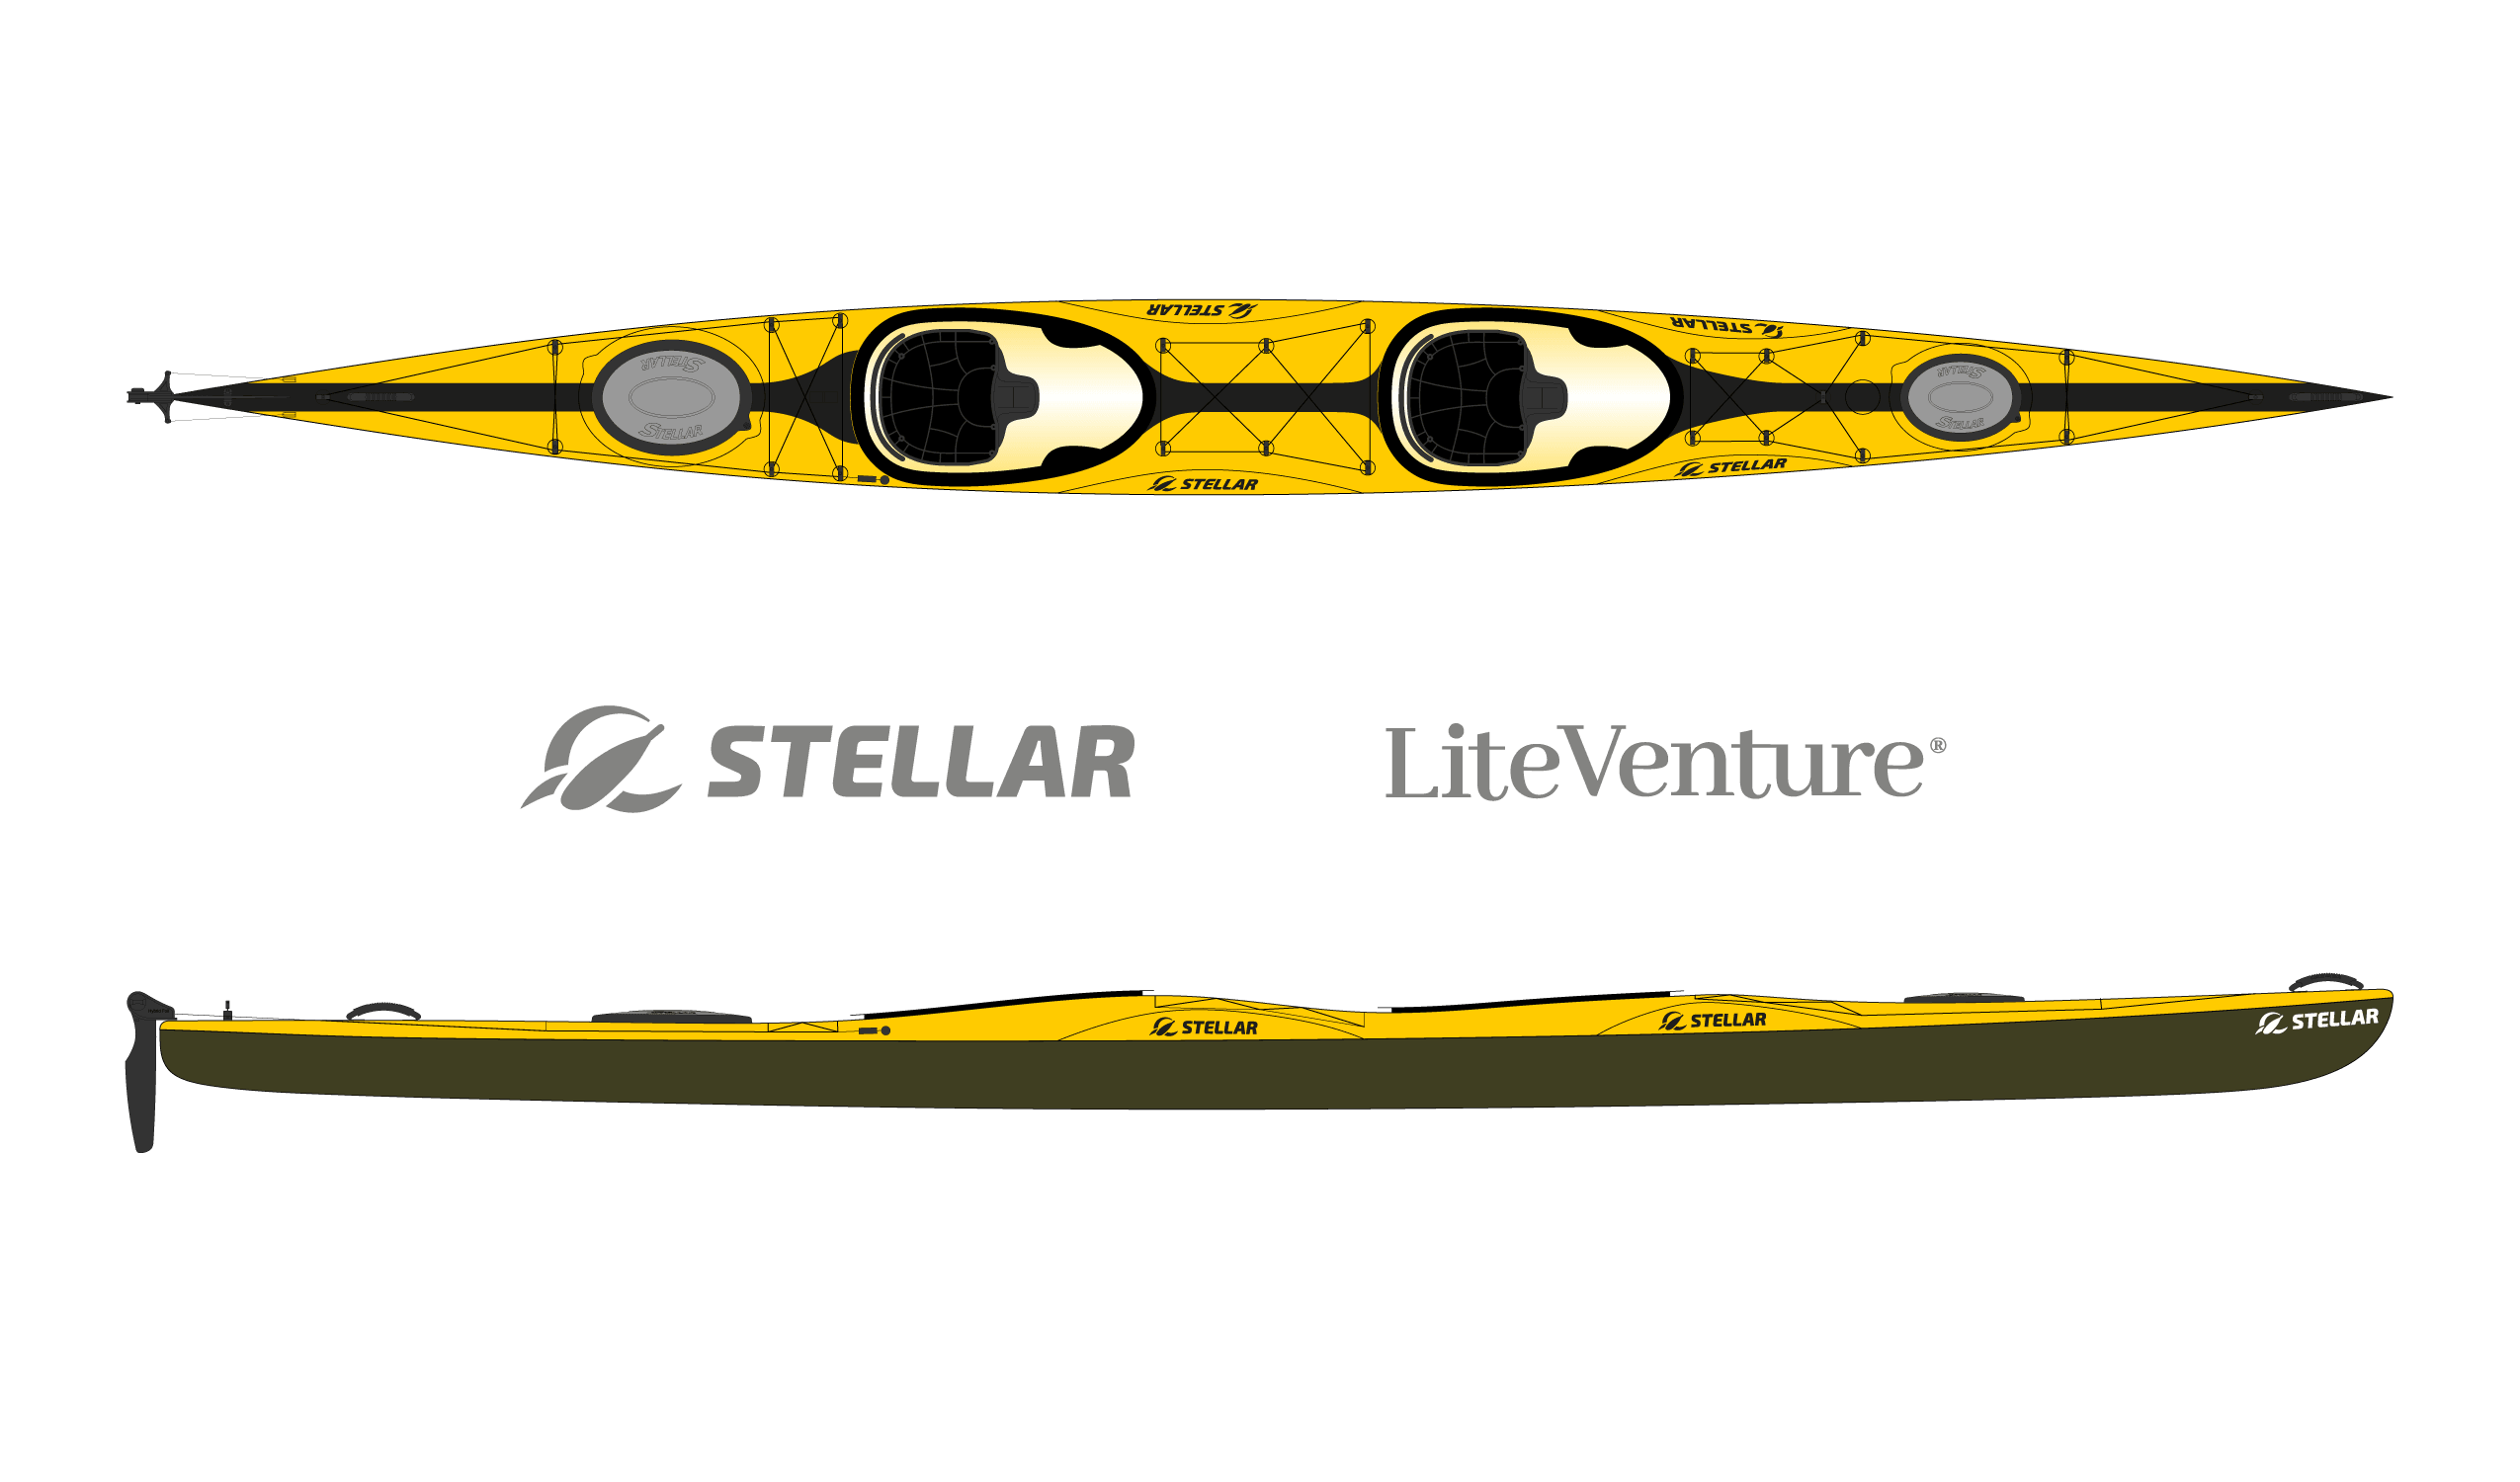 Produktbild von Kajak " ST21 Tandem Racer Multisport-gelb schwarz " der Marke STELLAR Lightweight für 4390.00 €. Erhältlich online bei Lite Venture ( www.liteventure.de )